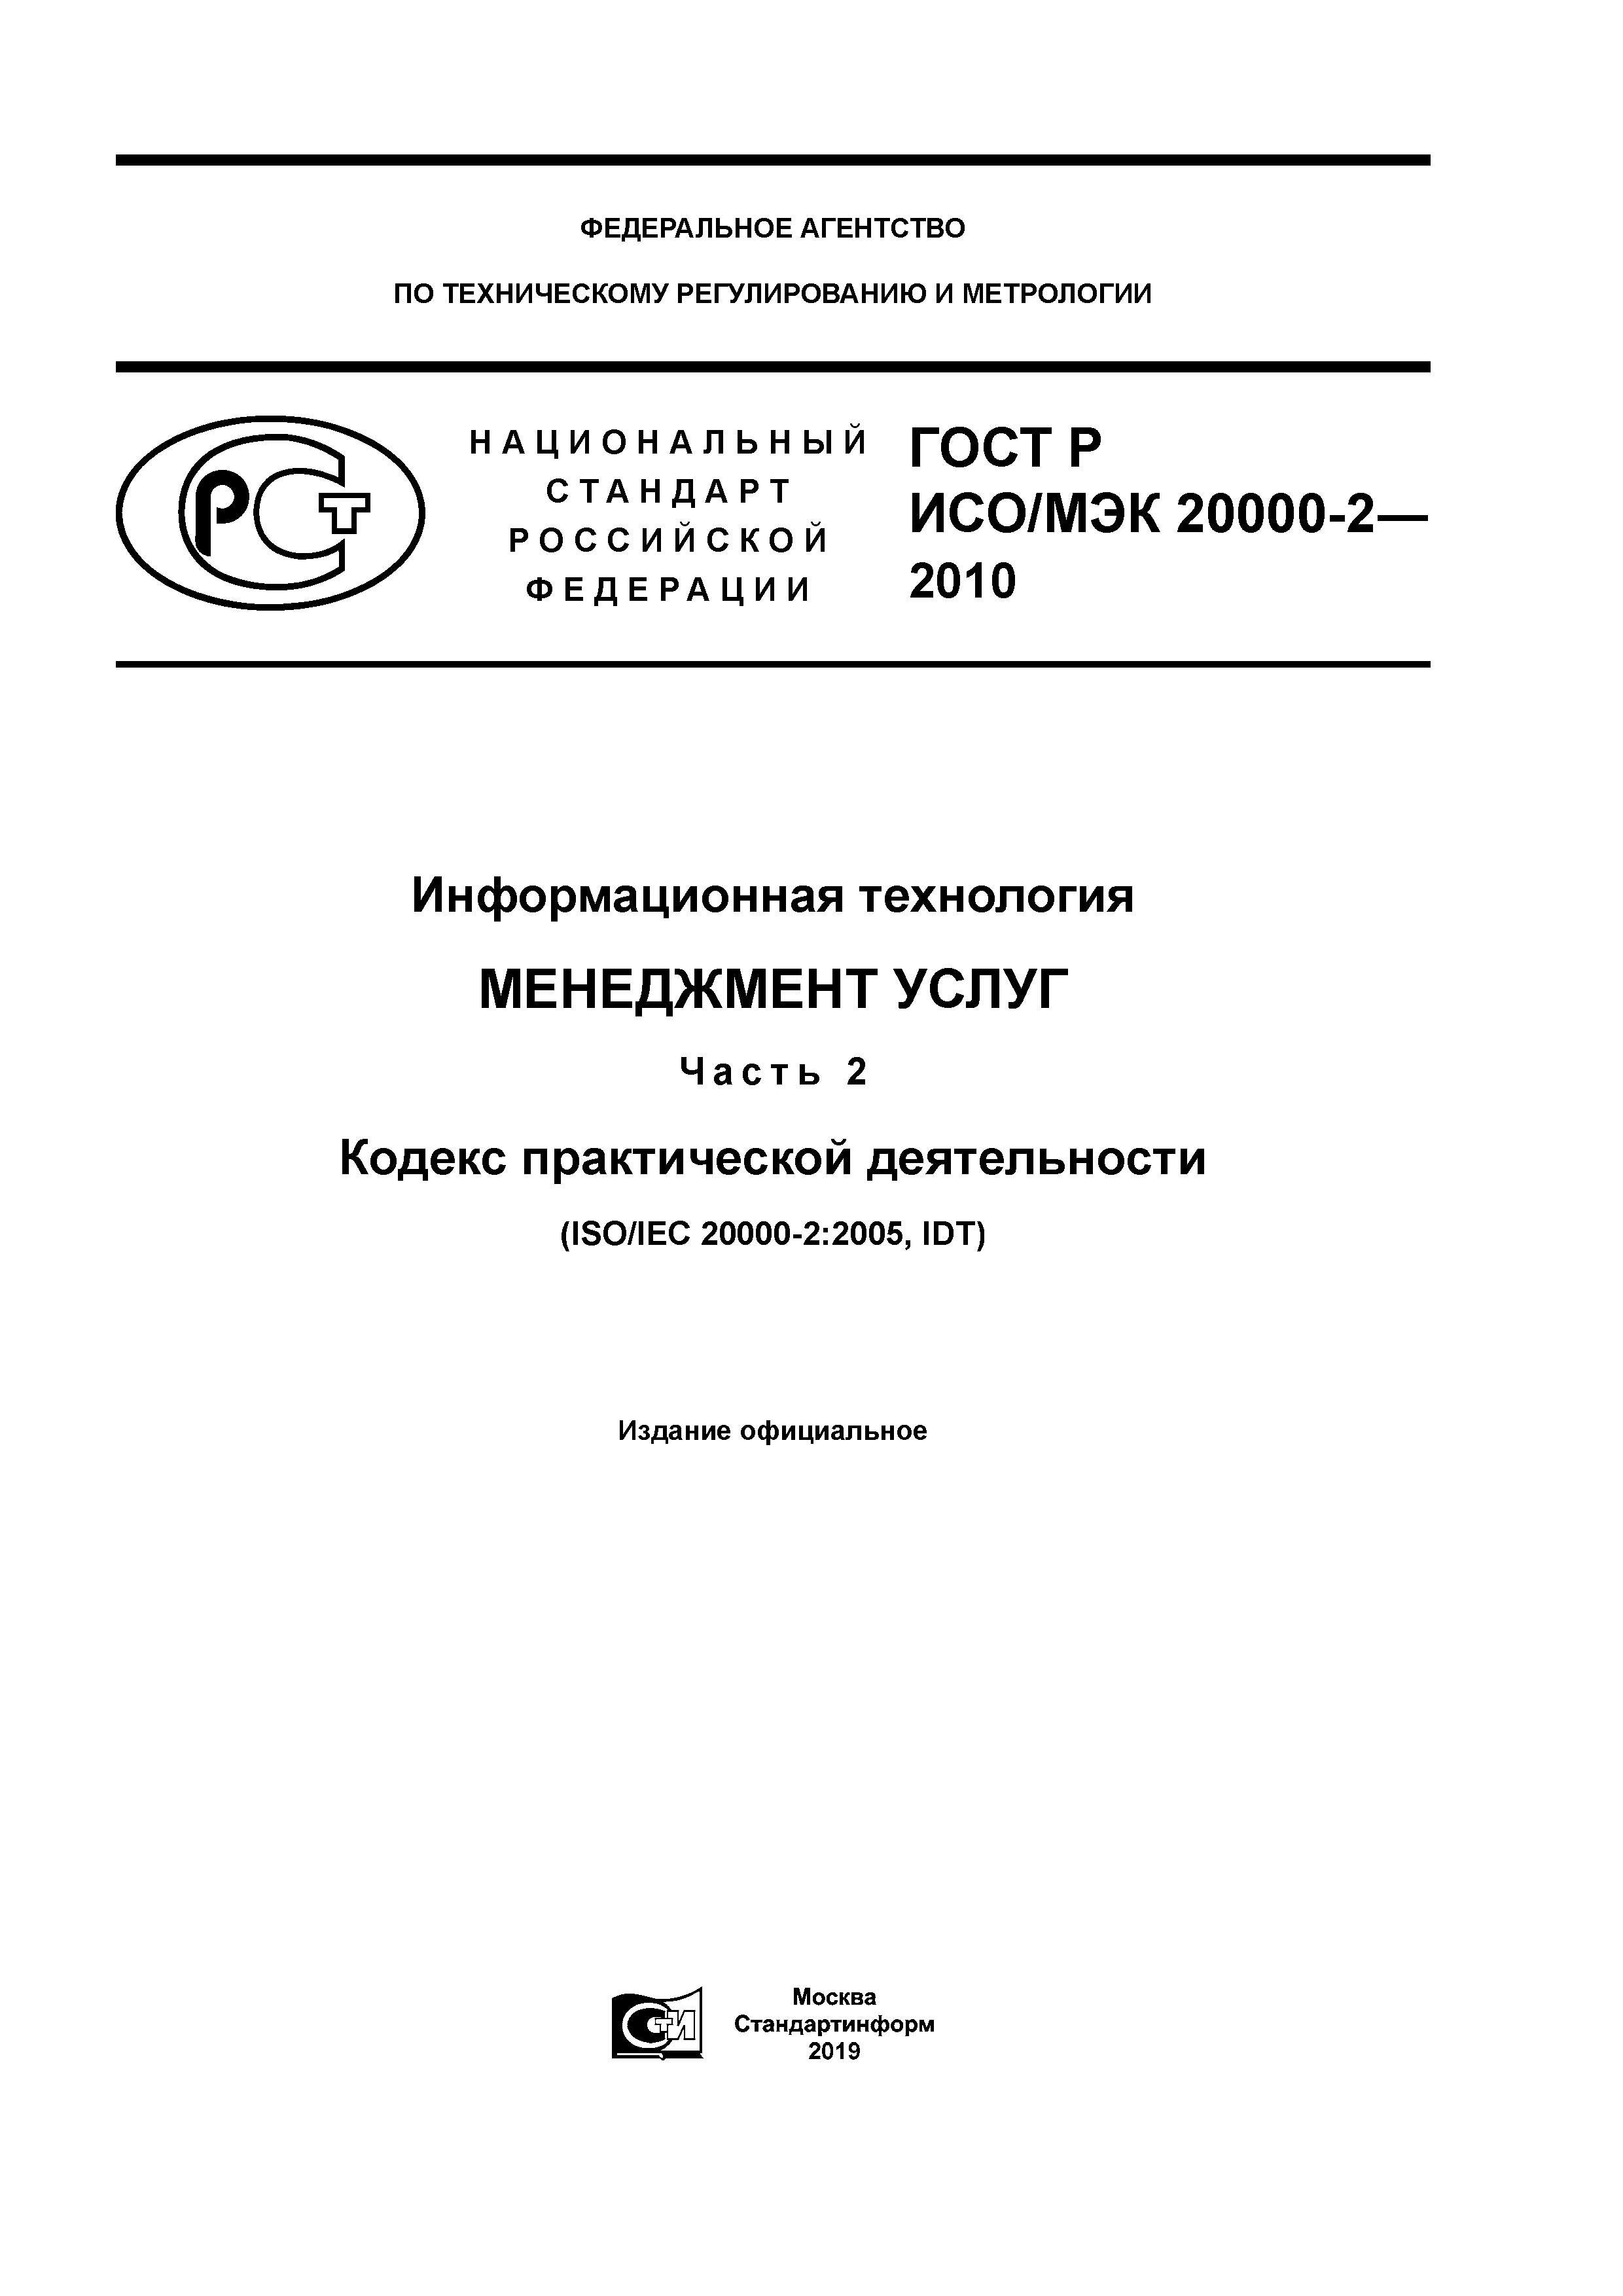 ГОСТ Р ИСО/МЭК 20000-2-2010